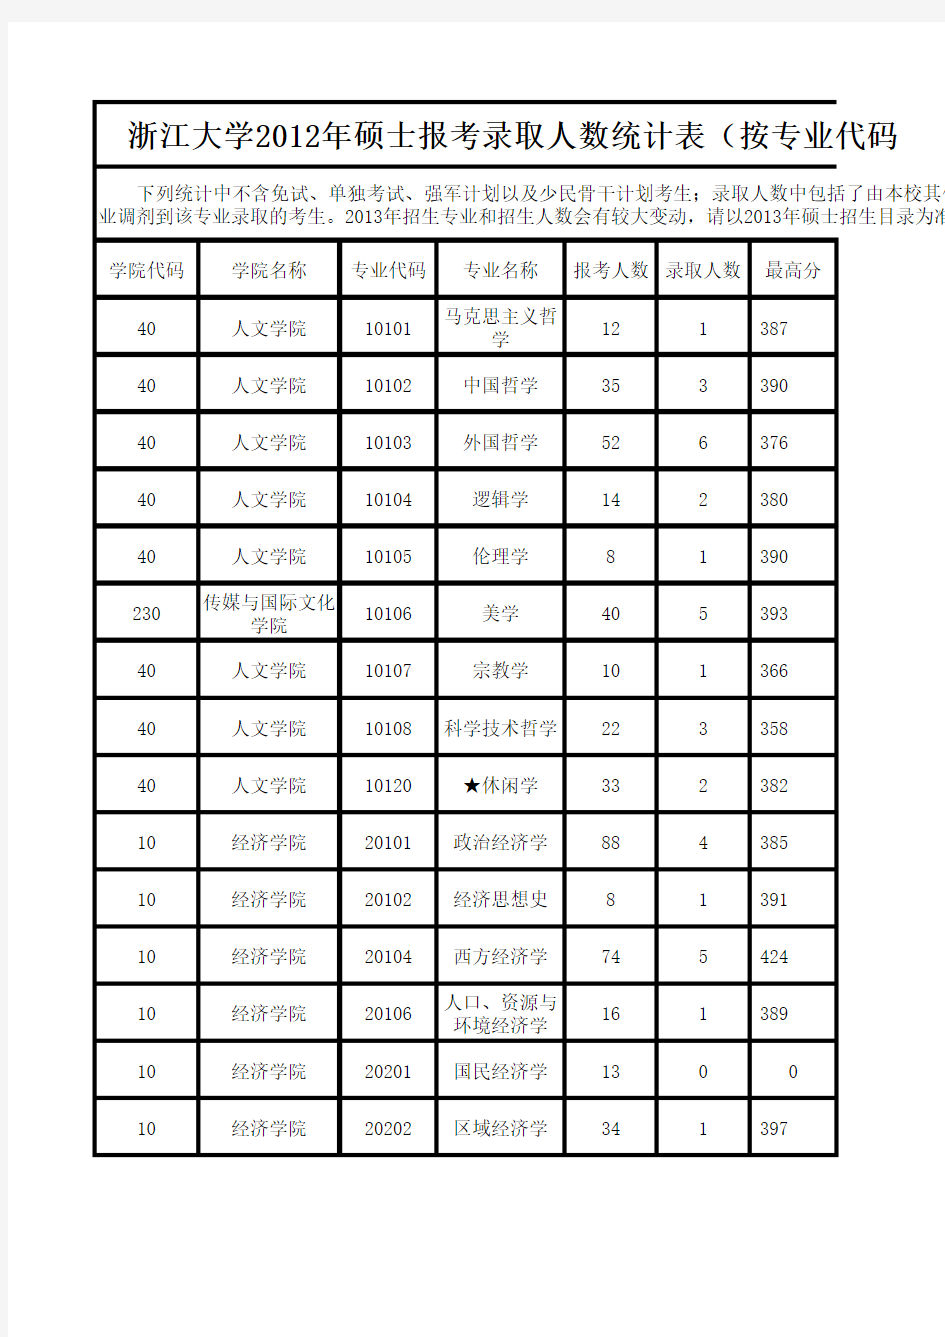 浙江大学xxxx年硕士报考录取人数统计表(按专业代码排序.xls